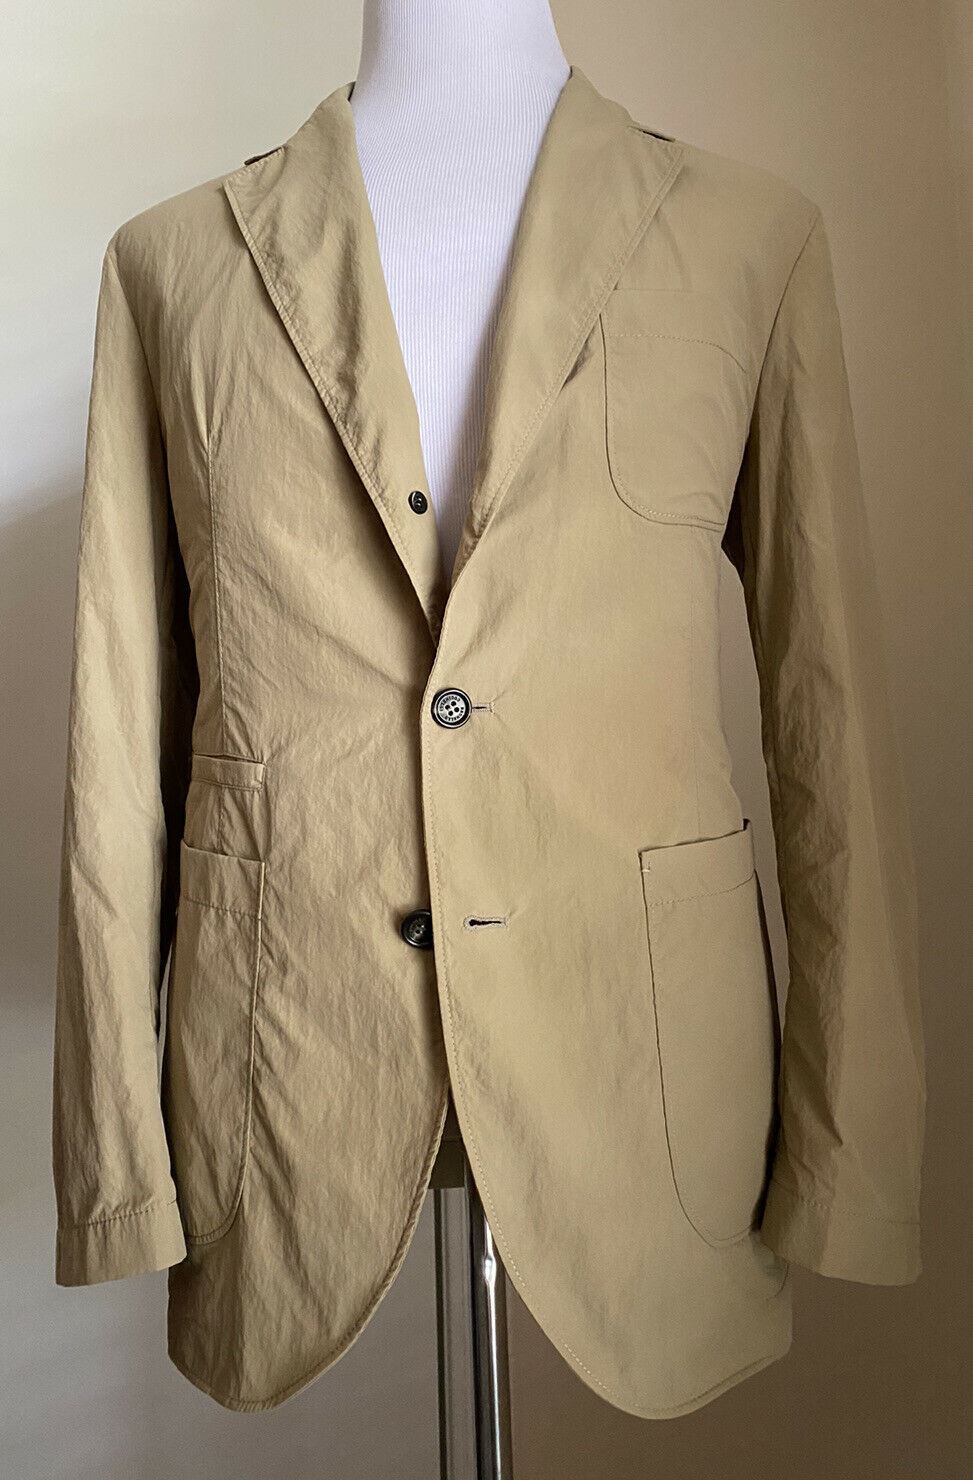 NWT $1995 Мужское спортивное пальто Brunello Cucinelli Технический пиджак Бежевый 40R США Италия